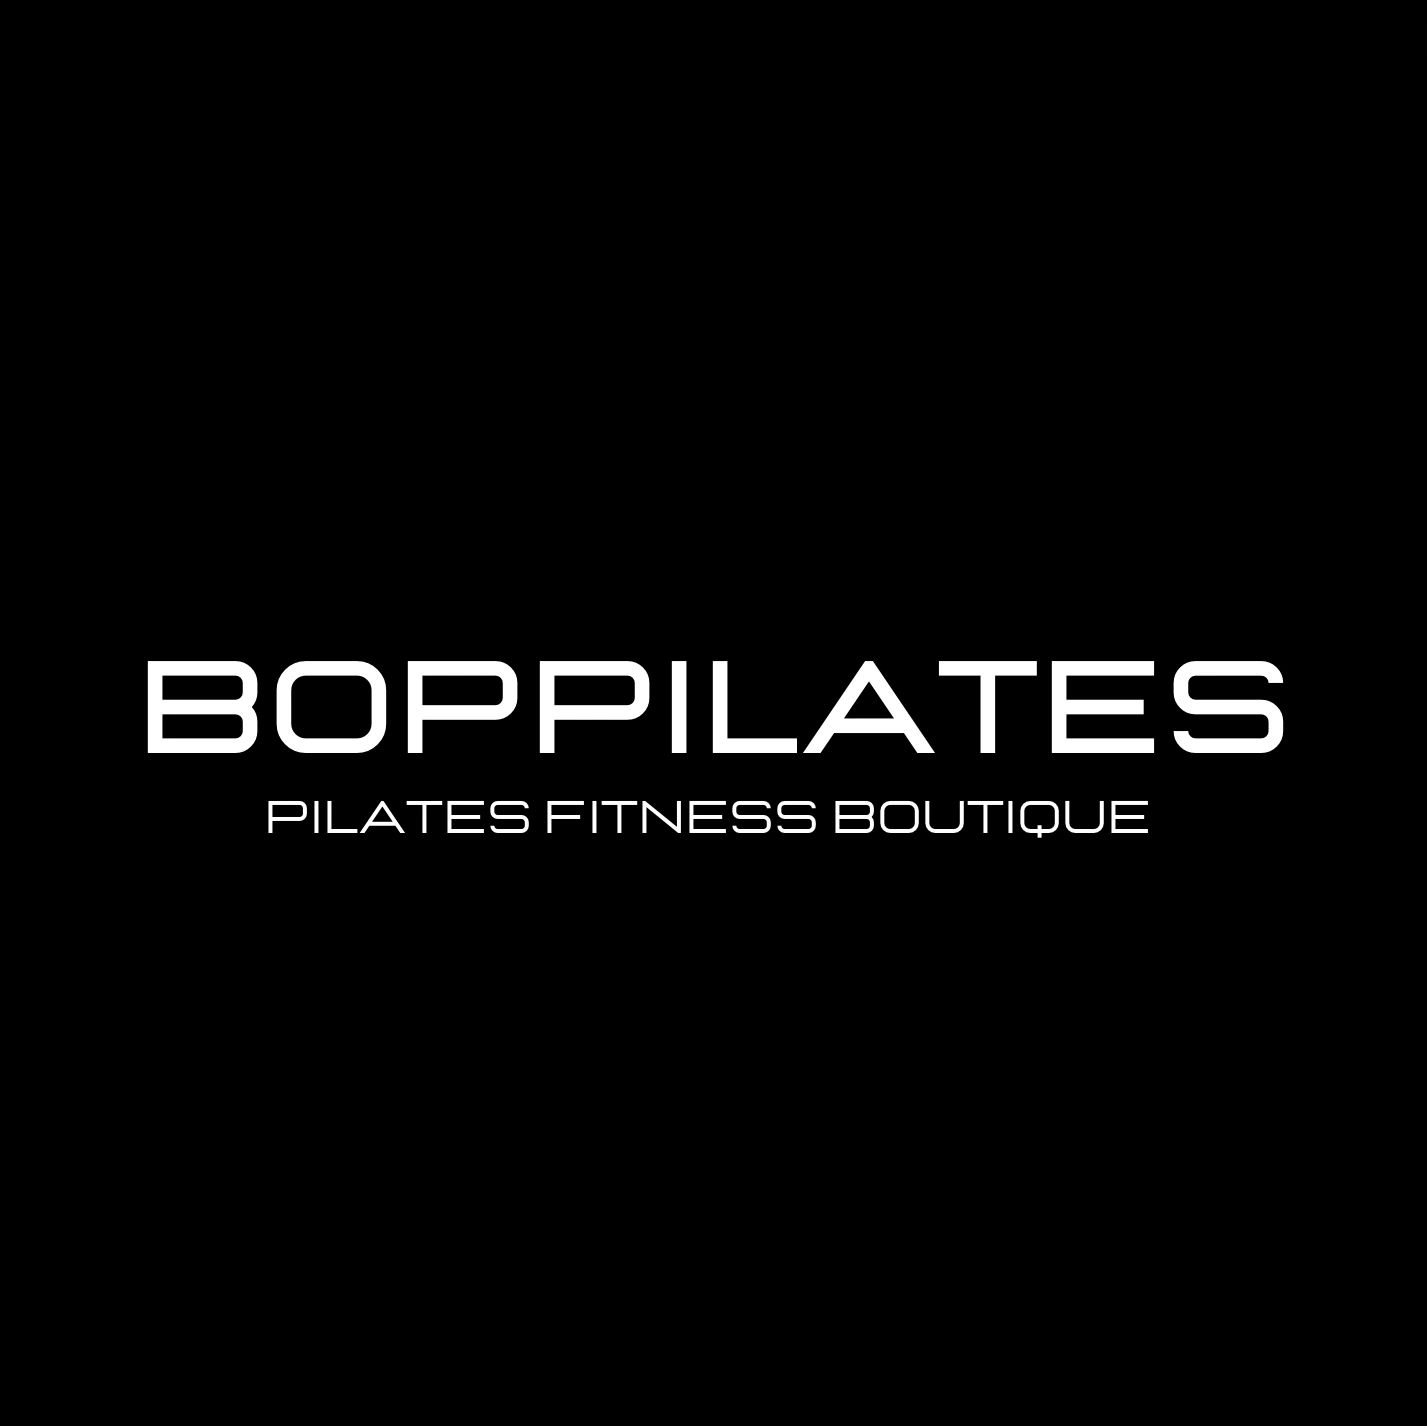 BOPPILATES - Pilates, Fitness